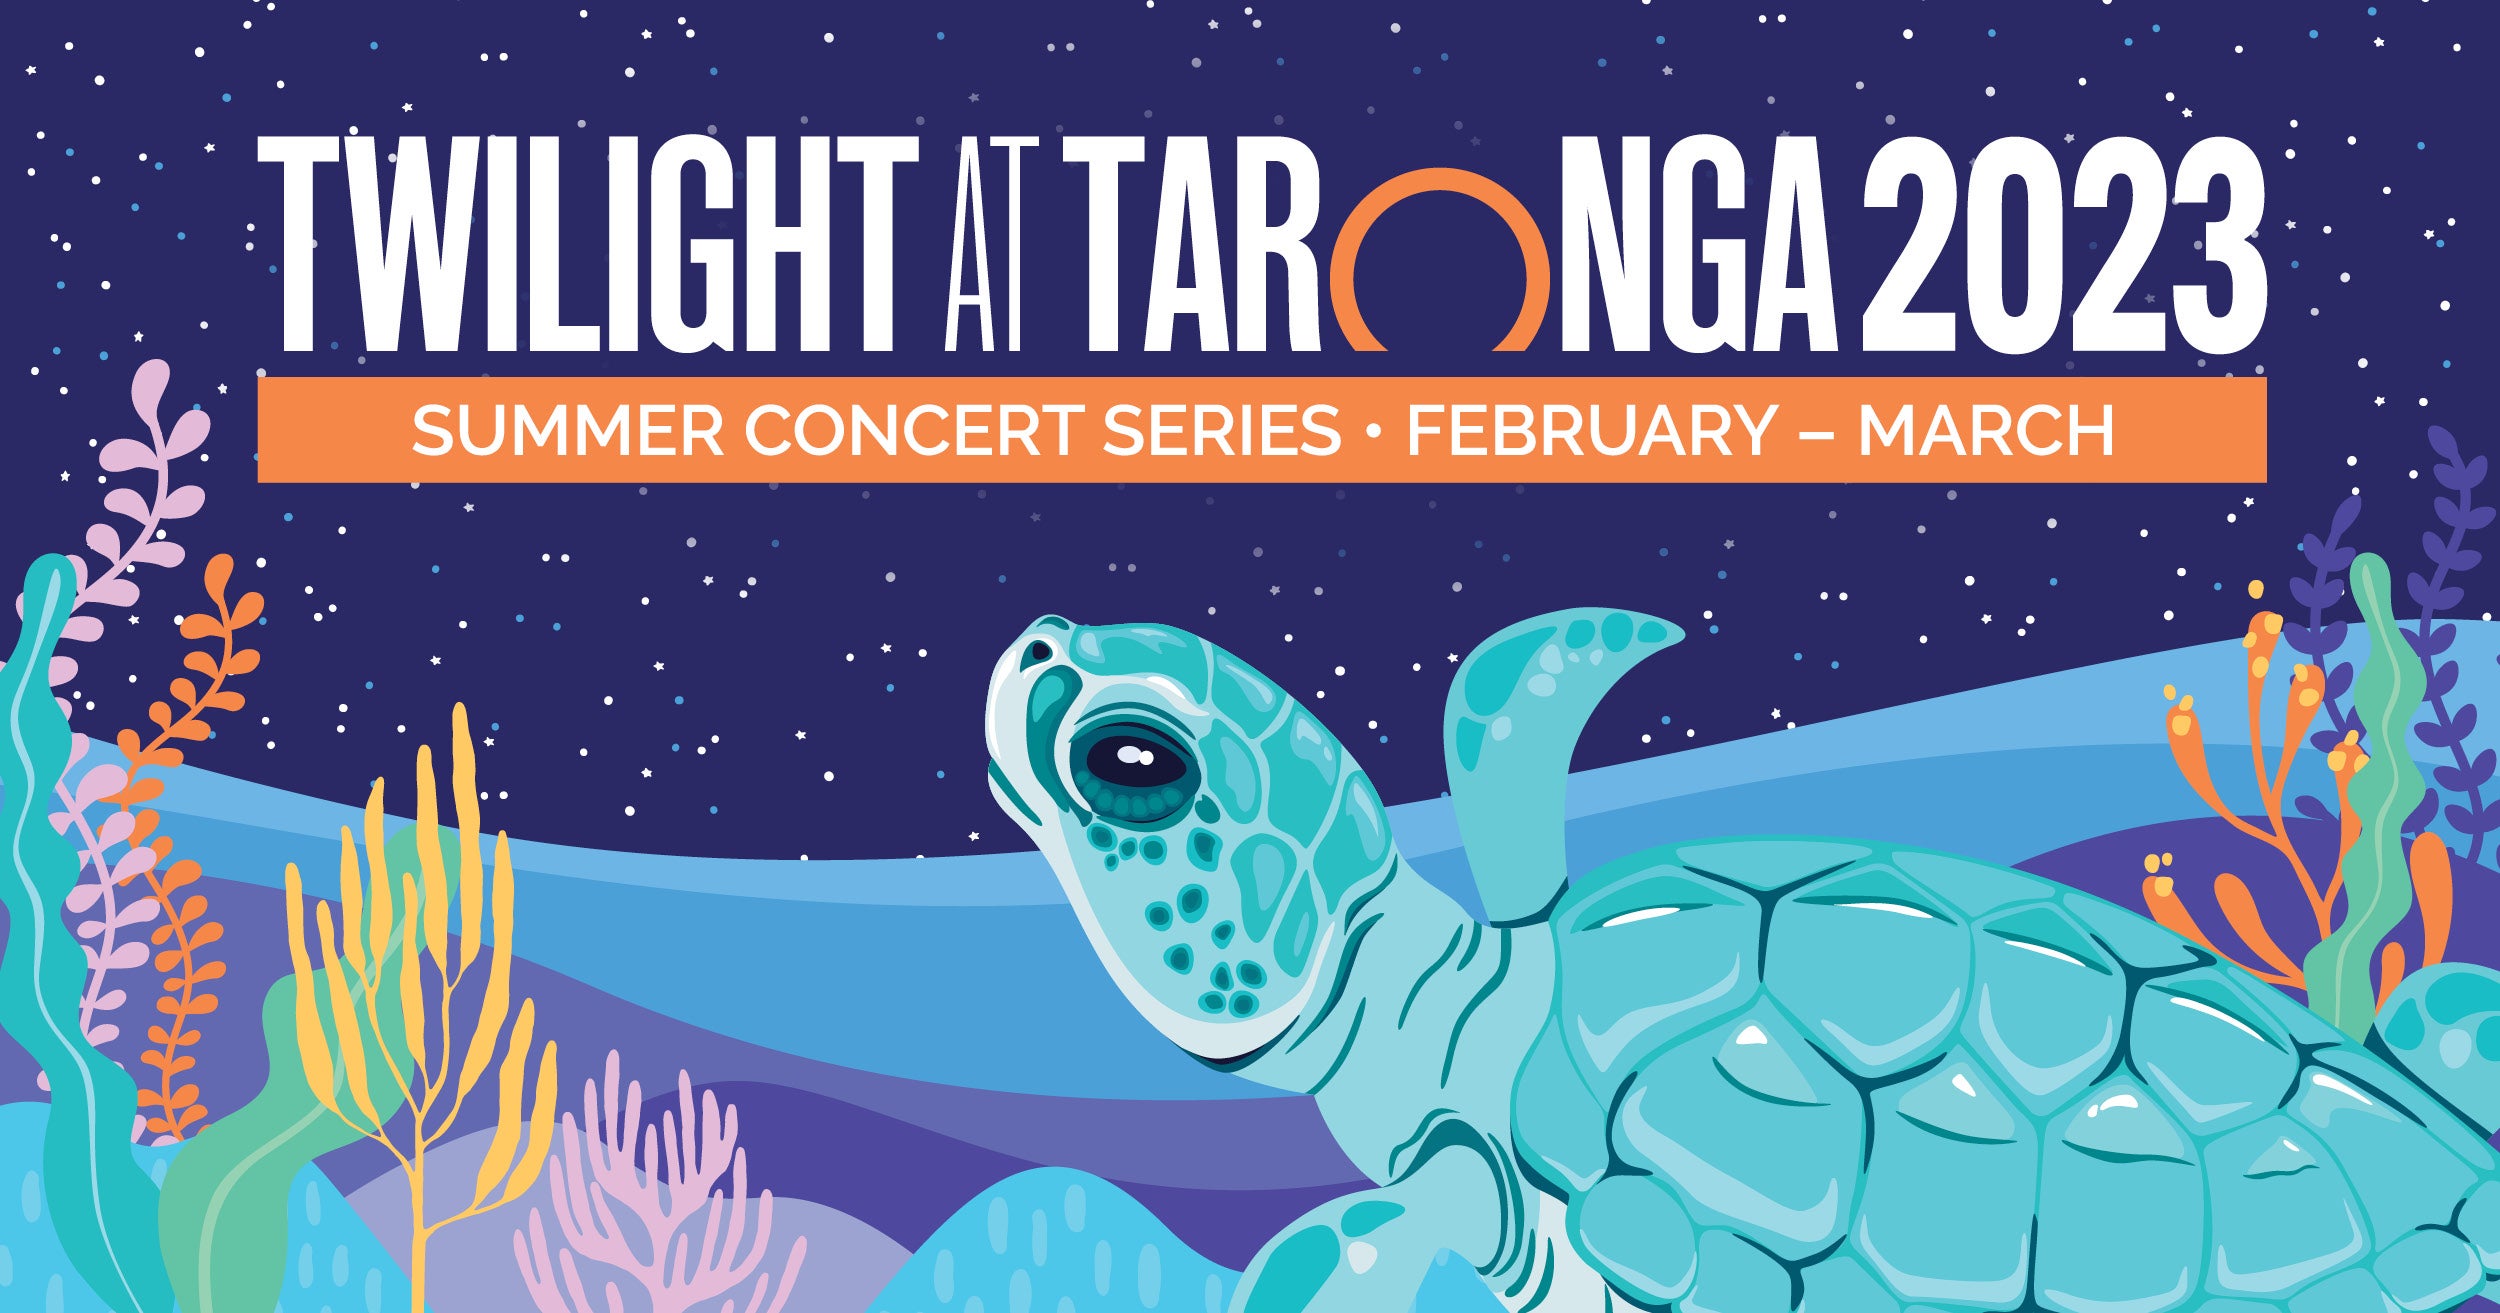 Twilight At Taronga 2023 Summer Concert Series Kicks Off Next Month!